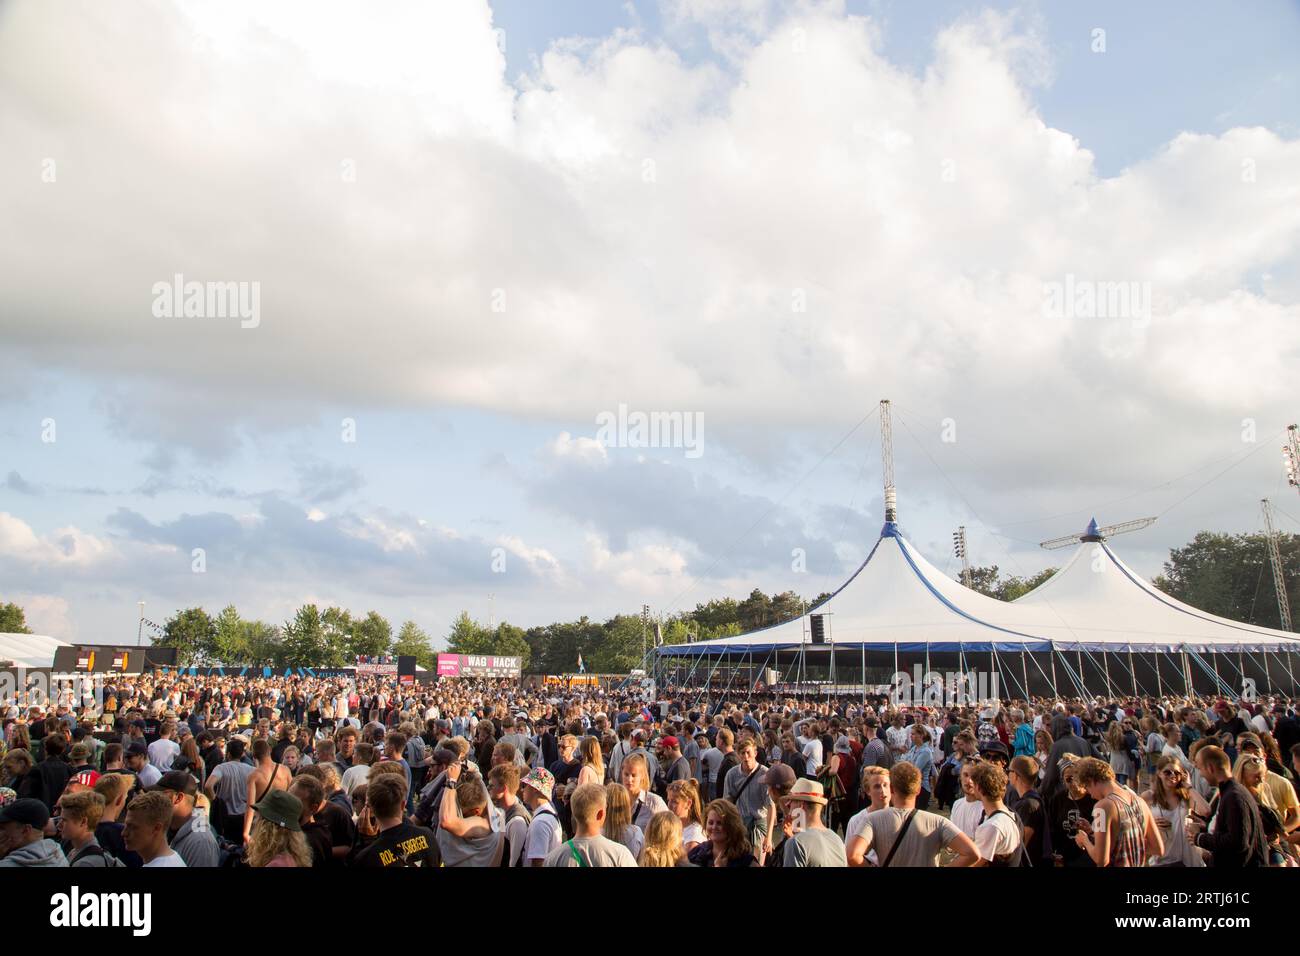 Roskilde, Danemark, 29 juin 2016 : foule de gens et scène de tente au Roskilde Festival 2016 Banque D'Images